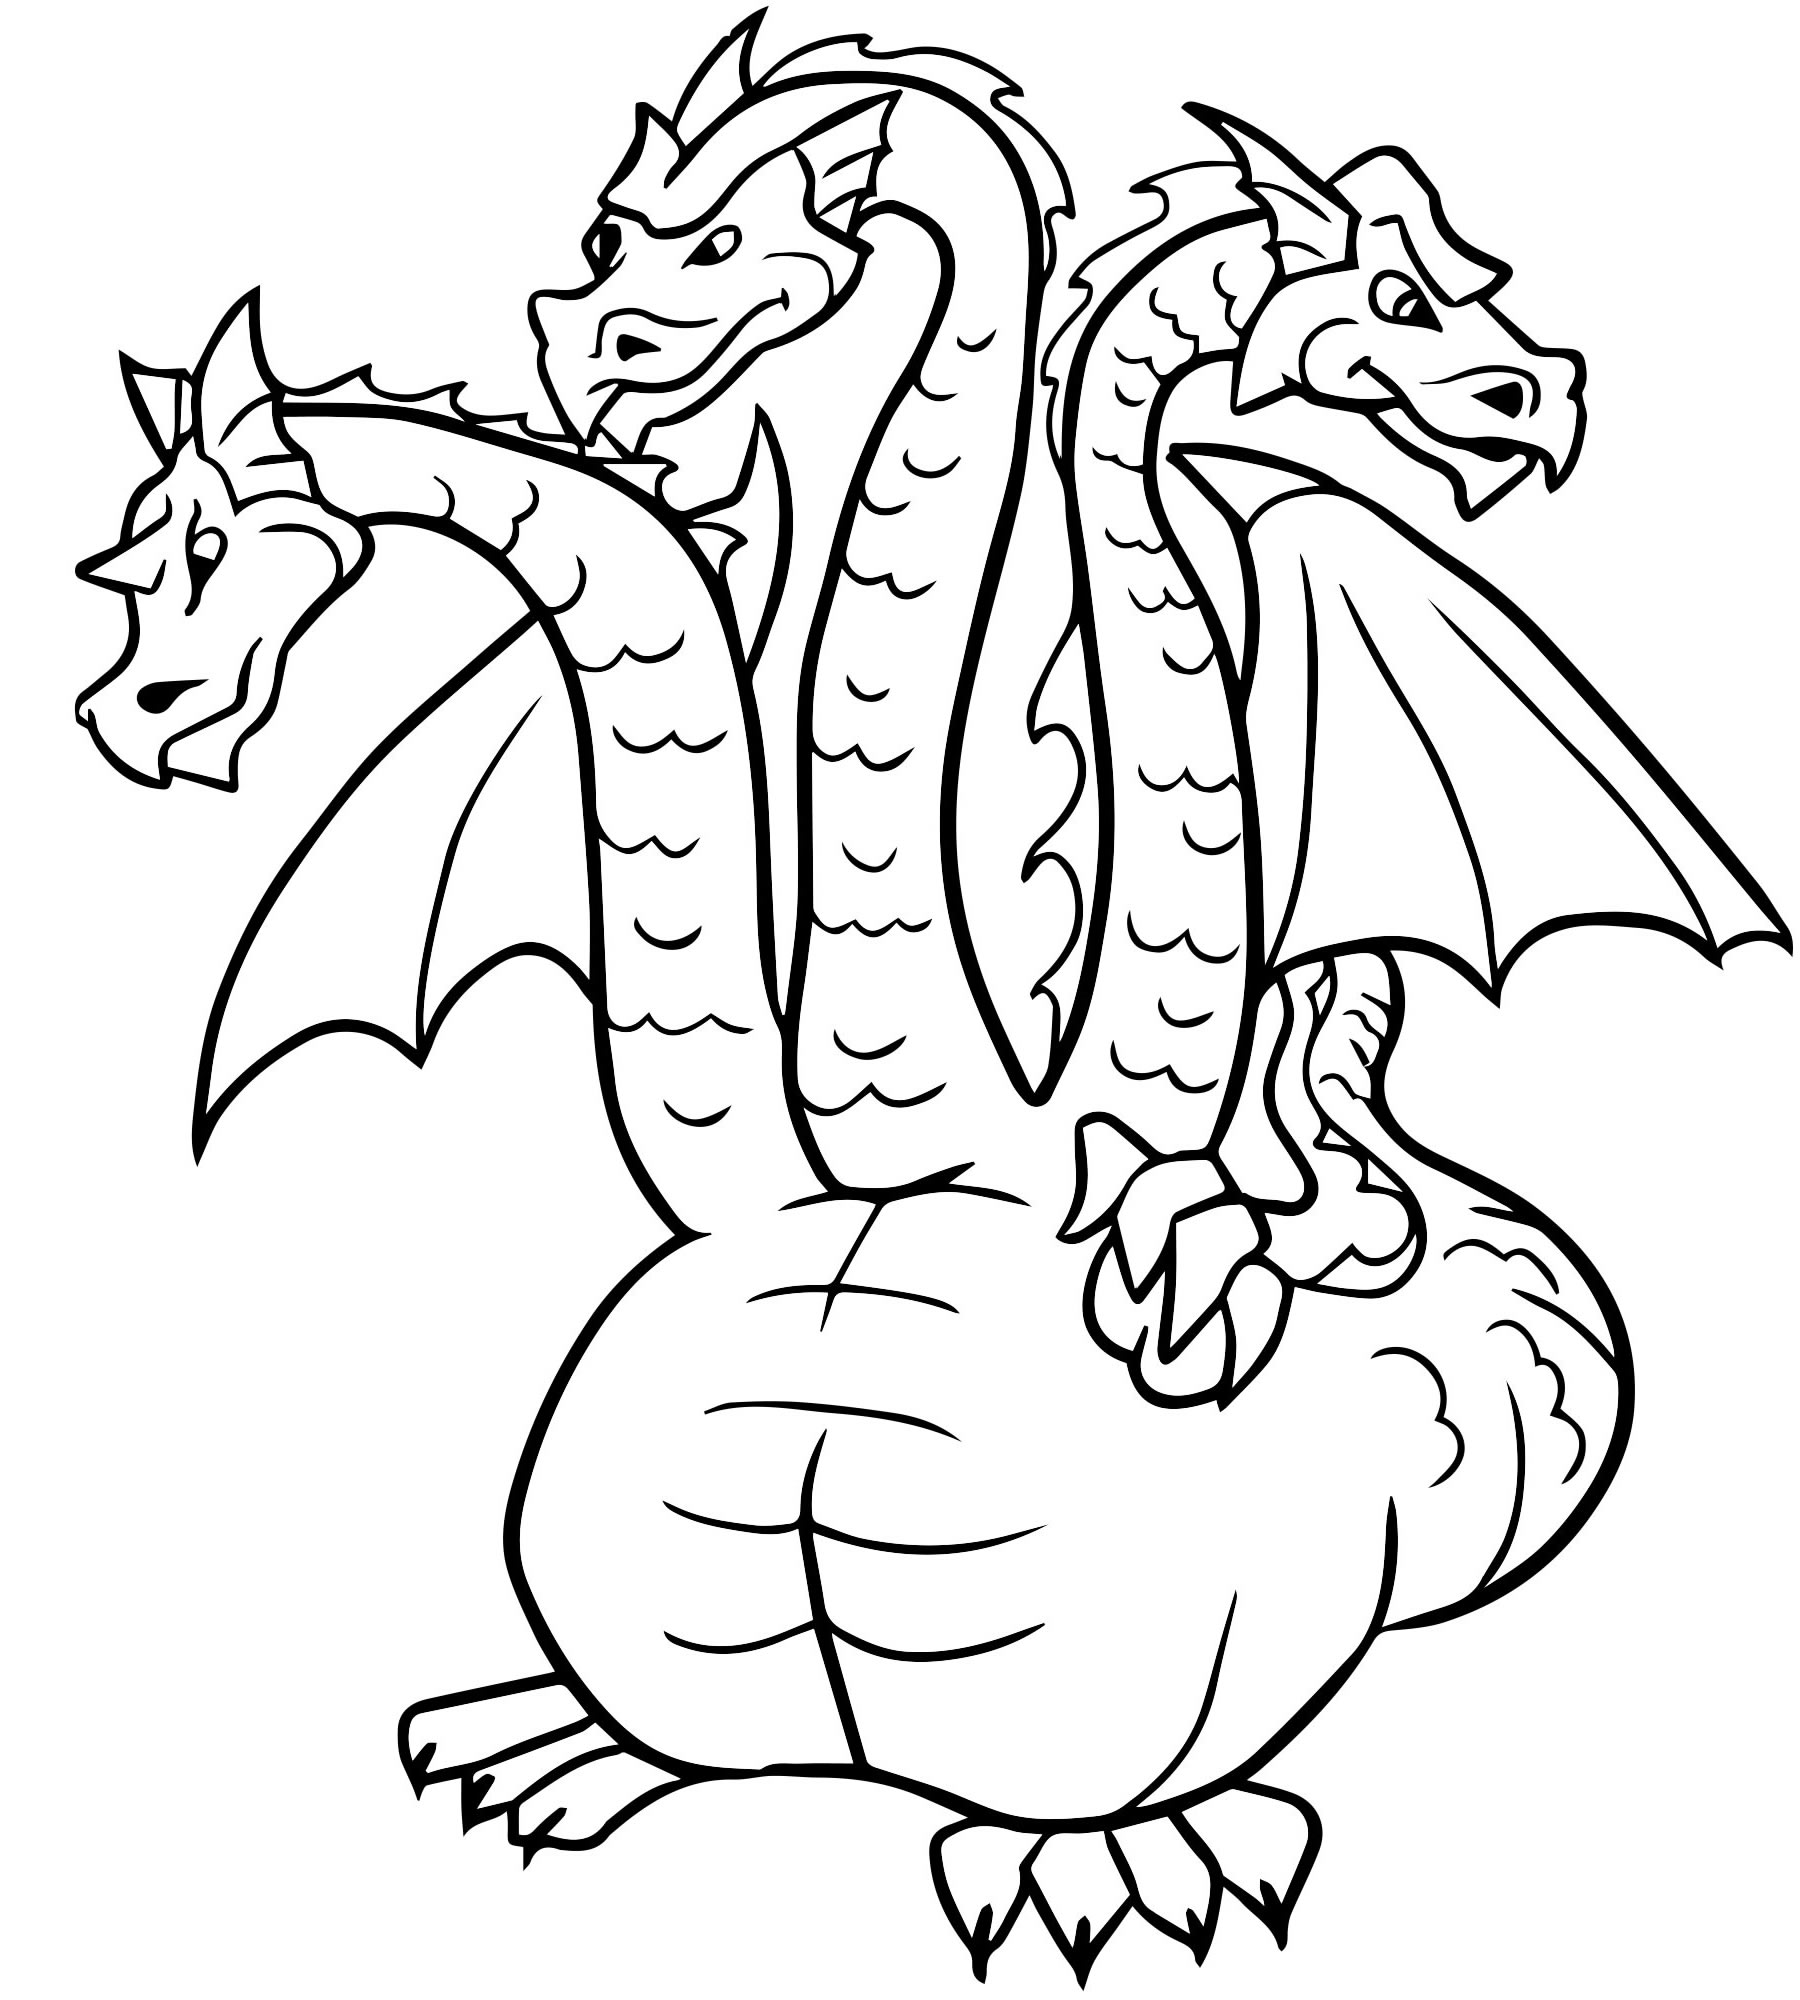 Трехглавый дракон раскраска для детей